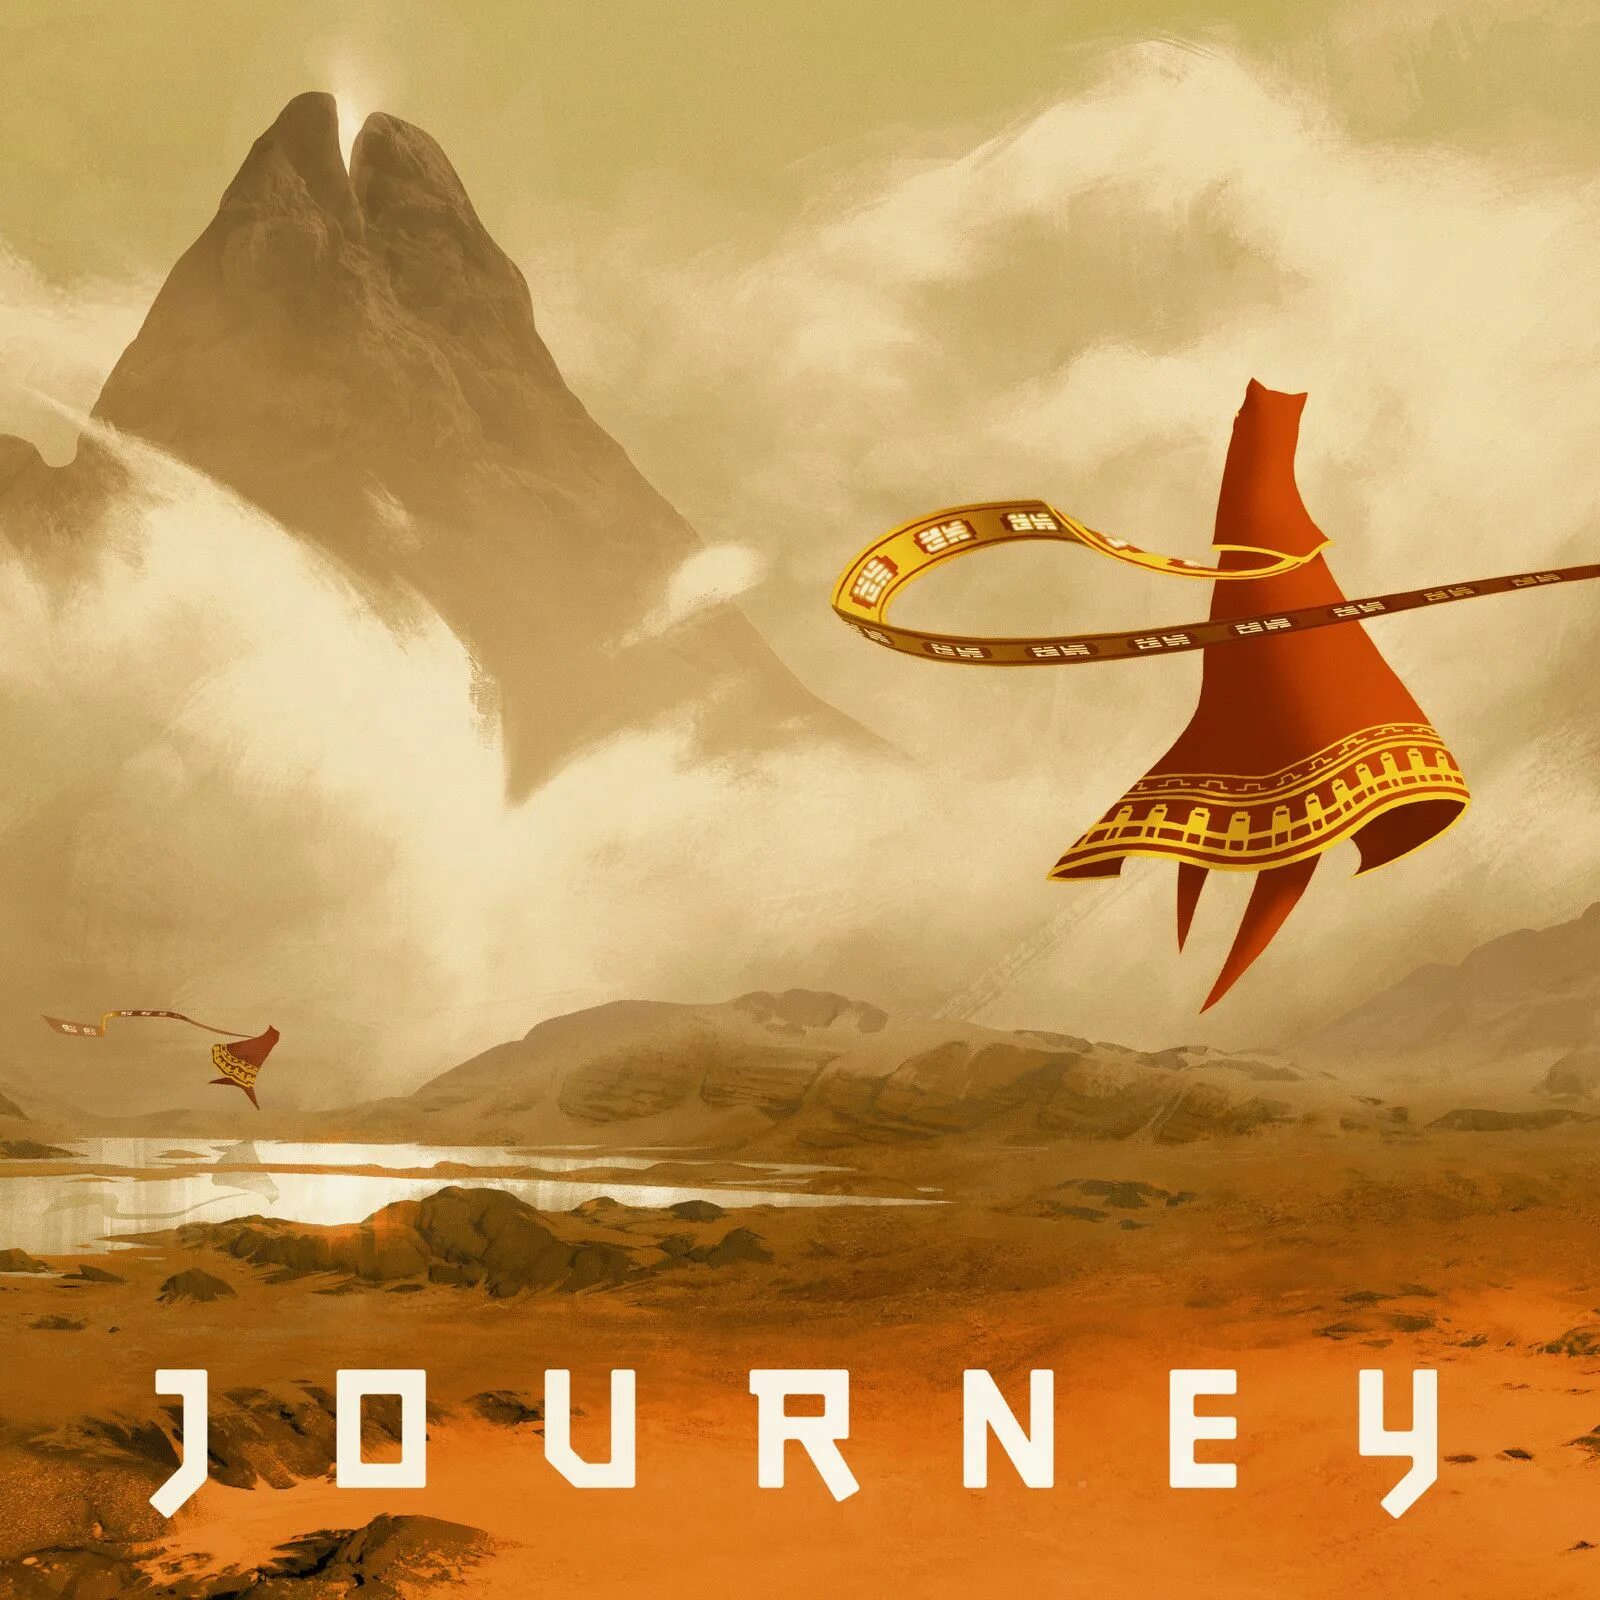 Journey (игра, 2012). Journey thatgamecompany. Путешествие игра Journey. Джорни путешествие игра.